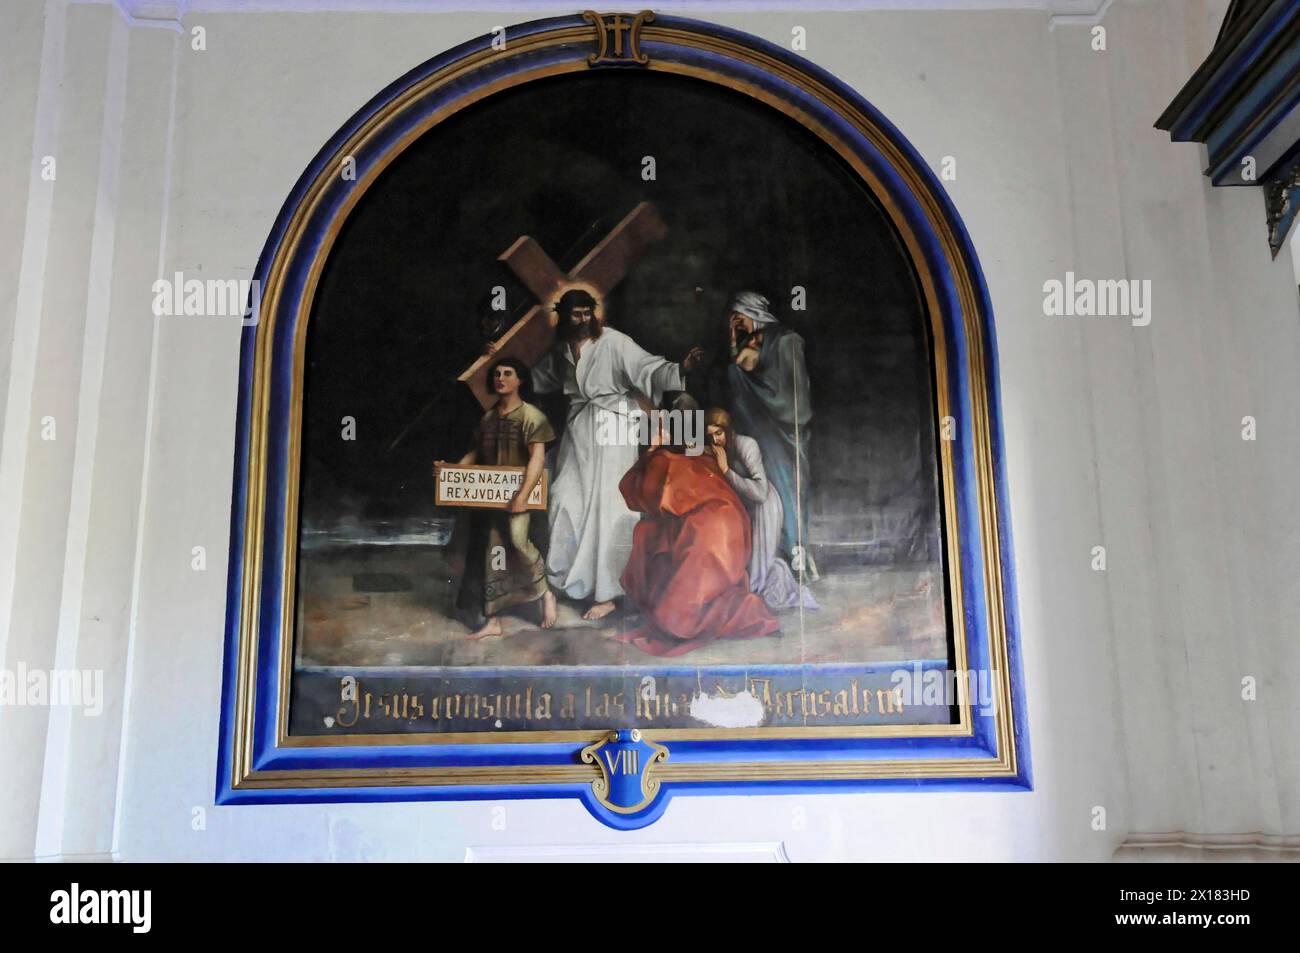 Catedral de la Asuncion, 1860, Léon, Nicaragua, Amérique centrale, peinture historique d'une scène de crucifixion avec Jésus et deux assistants, Central Banque D'Images